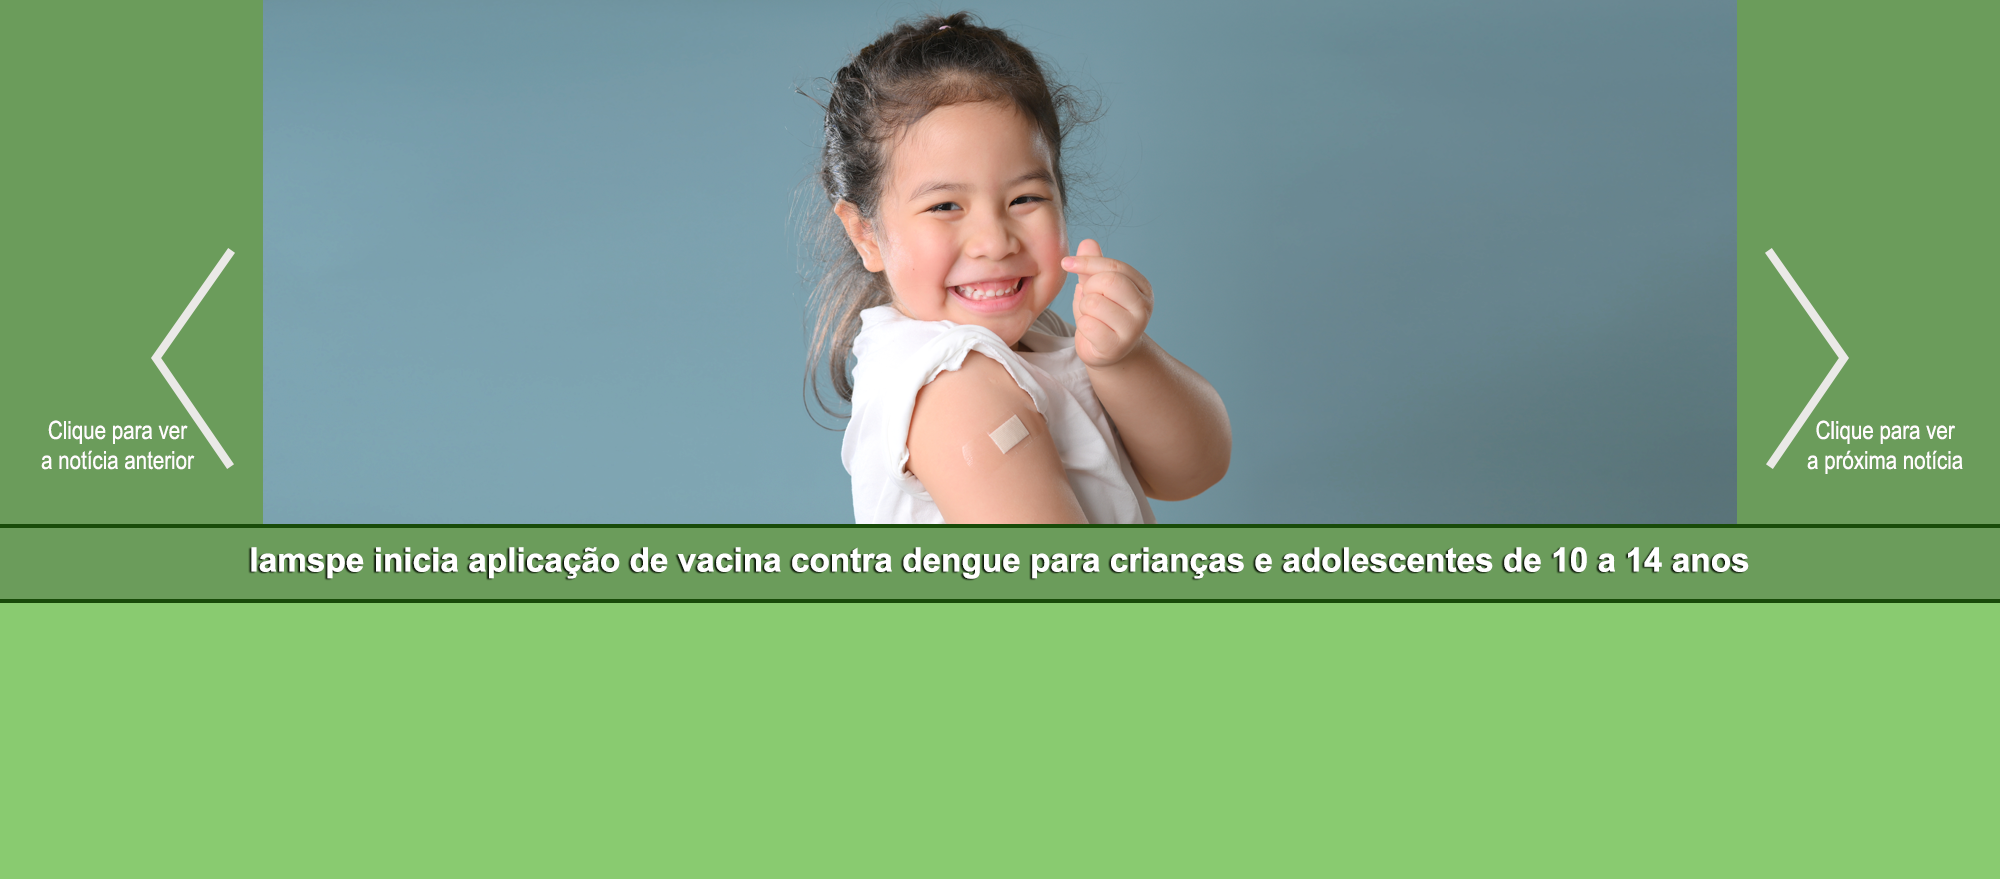 Slider – Iamspe inicia aplicação de vacina contra dengue para crianças e adolescentes de 10 a 14 anos